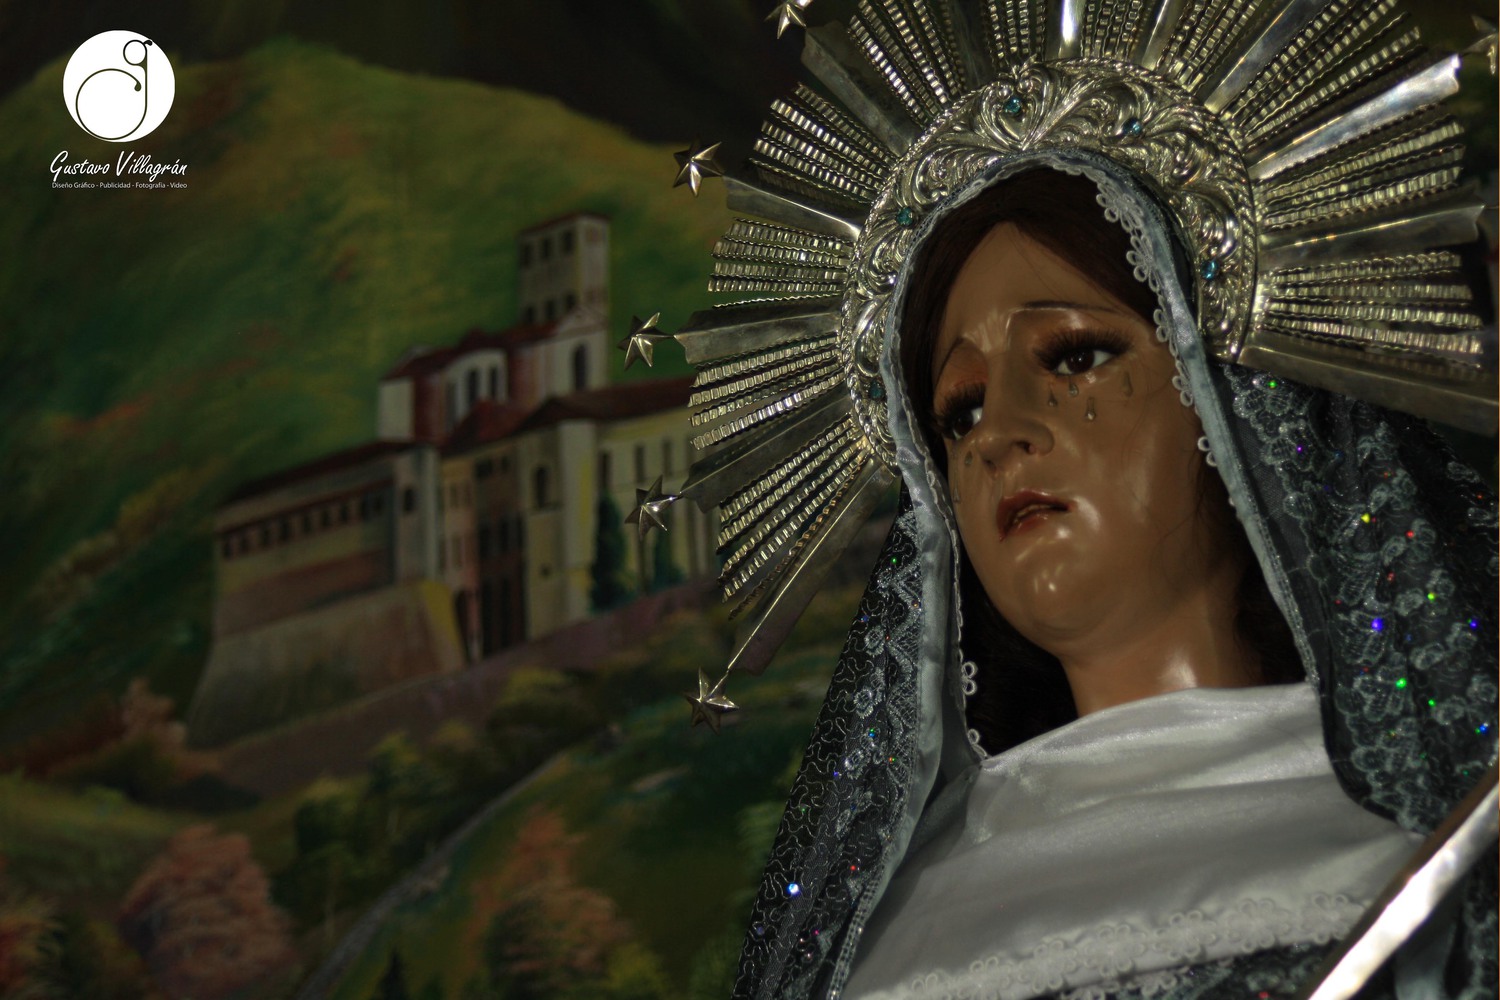 Galería: 3er viernes de Cuaresma en Quetzaltenango